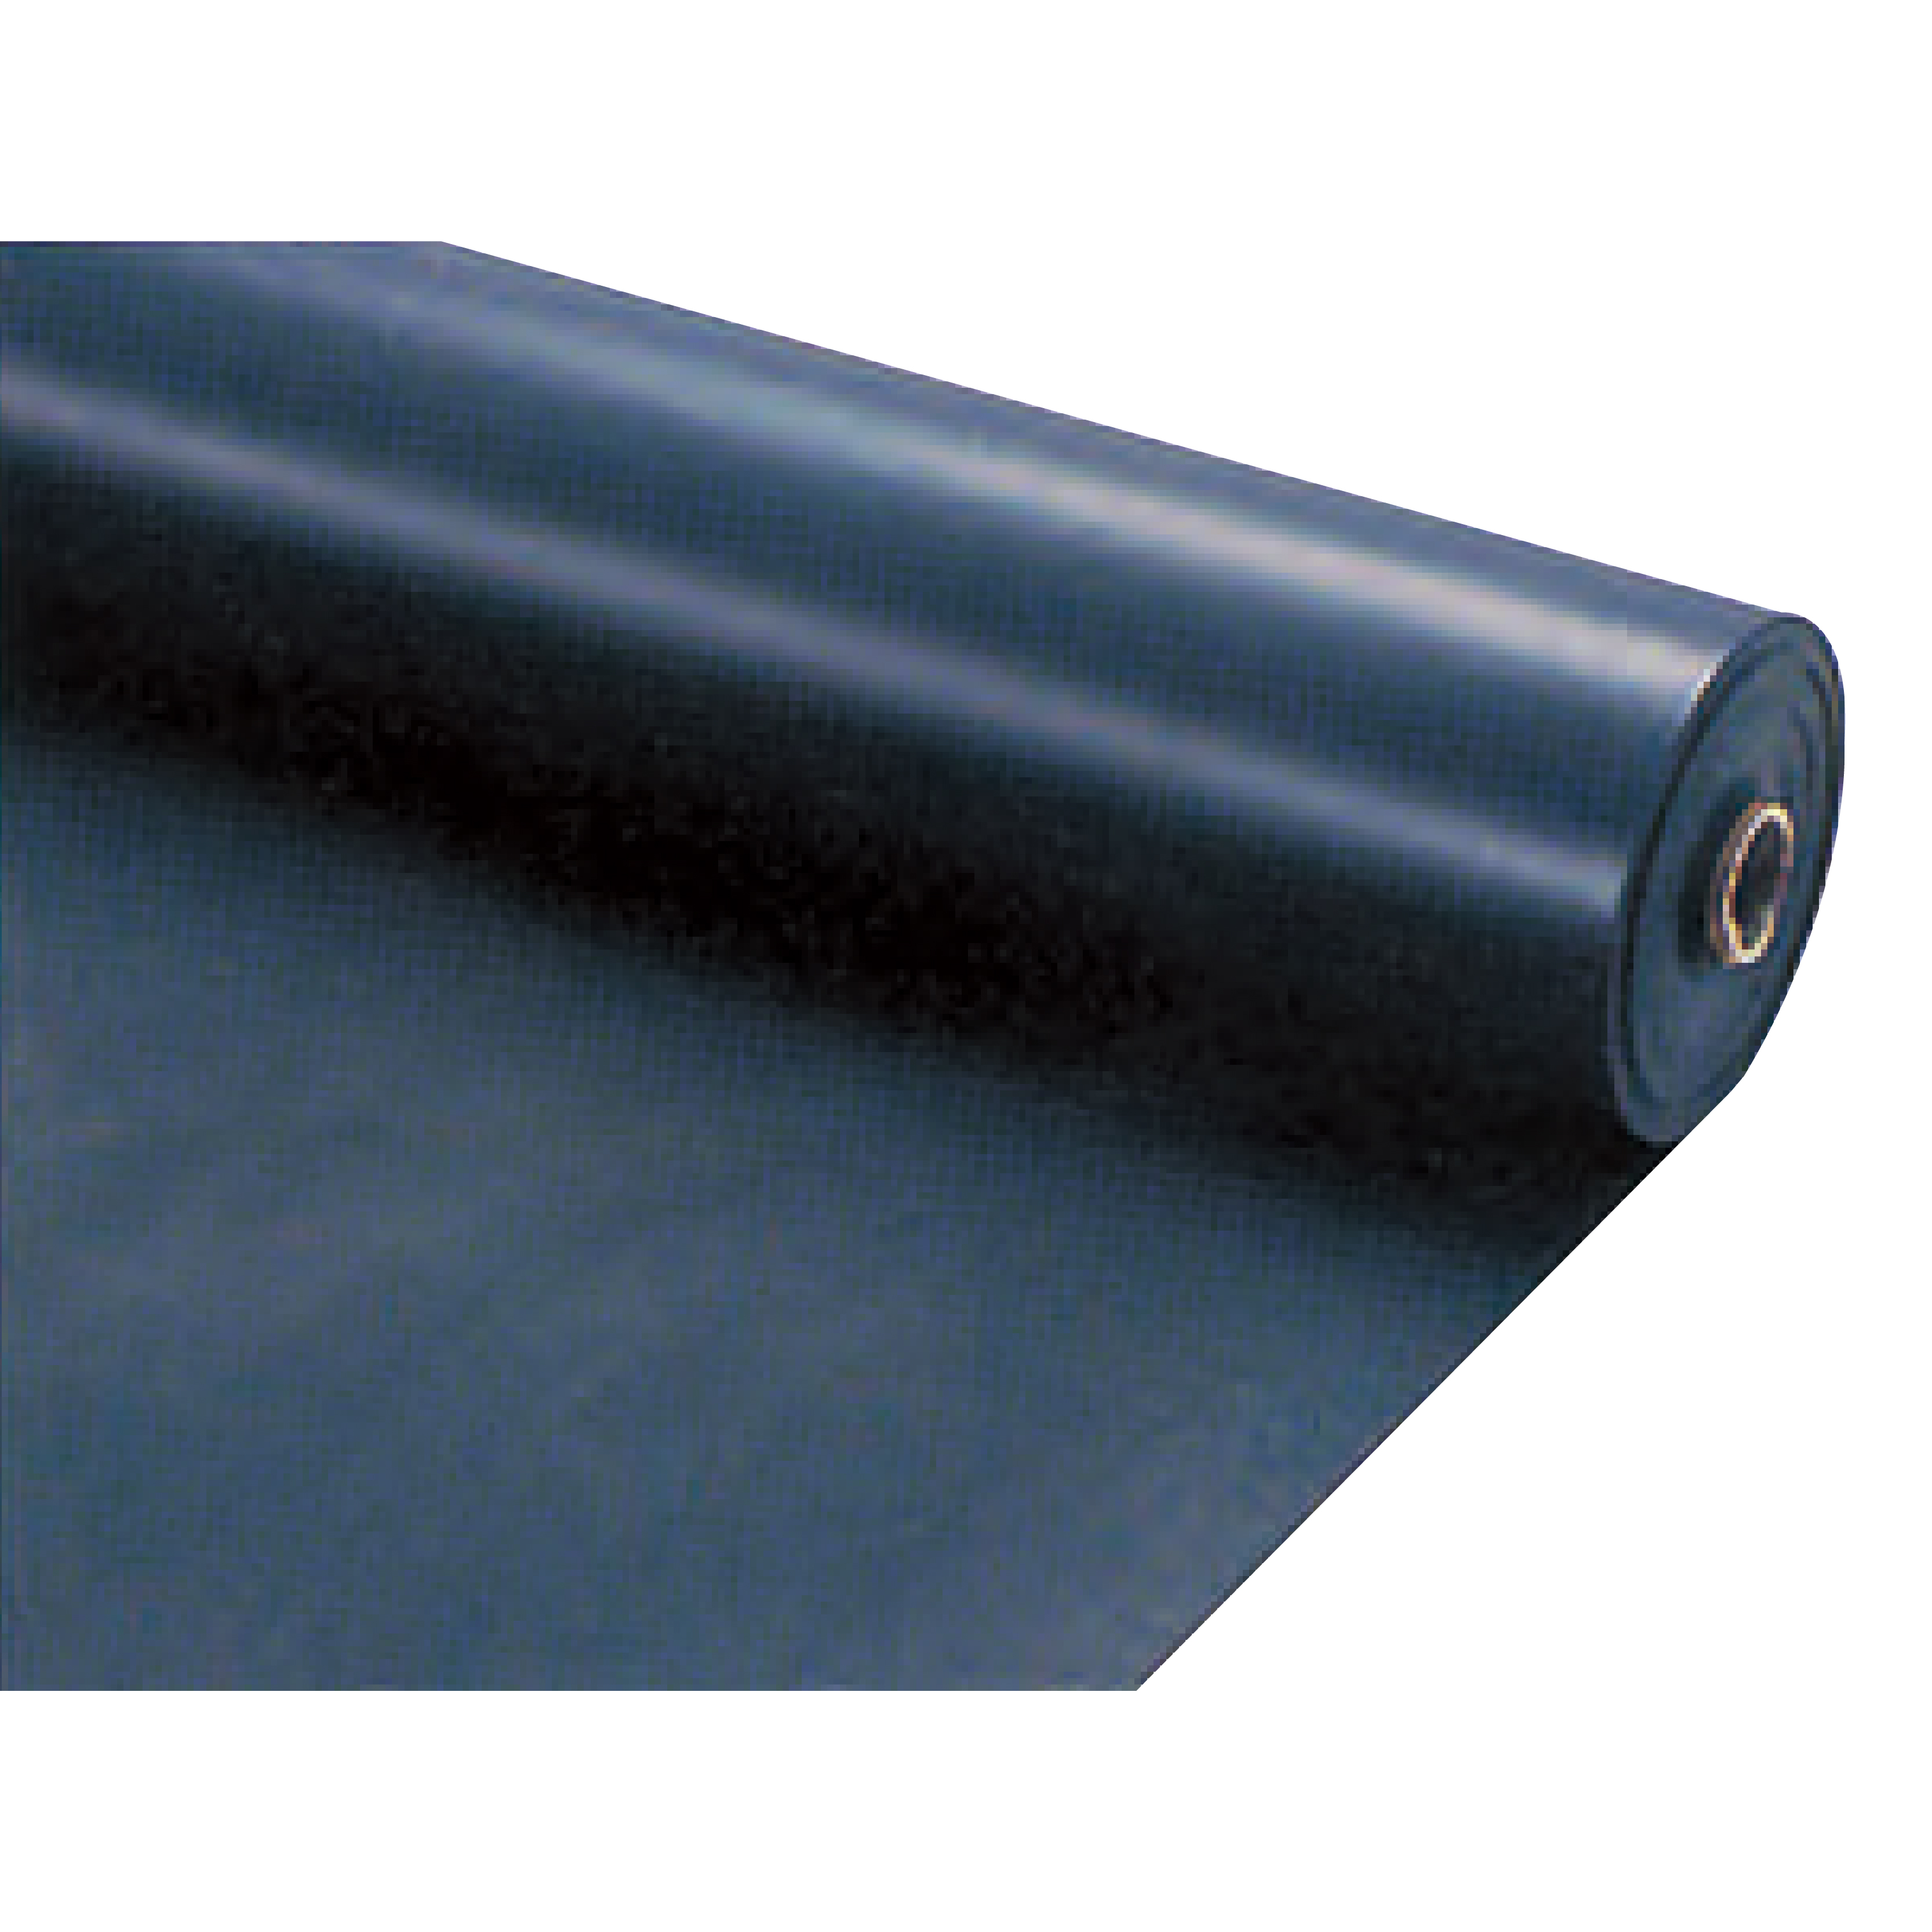 塩ビシート0.5 黒 1×30(m) エンボス加工養生材 N35-021 エムエフ